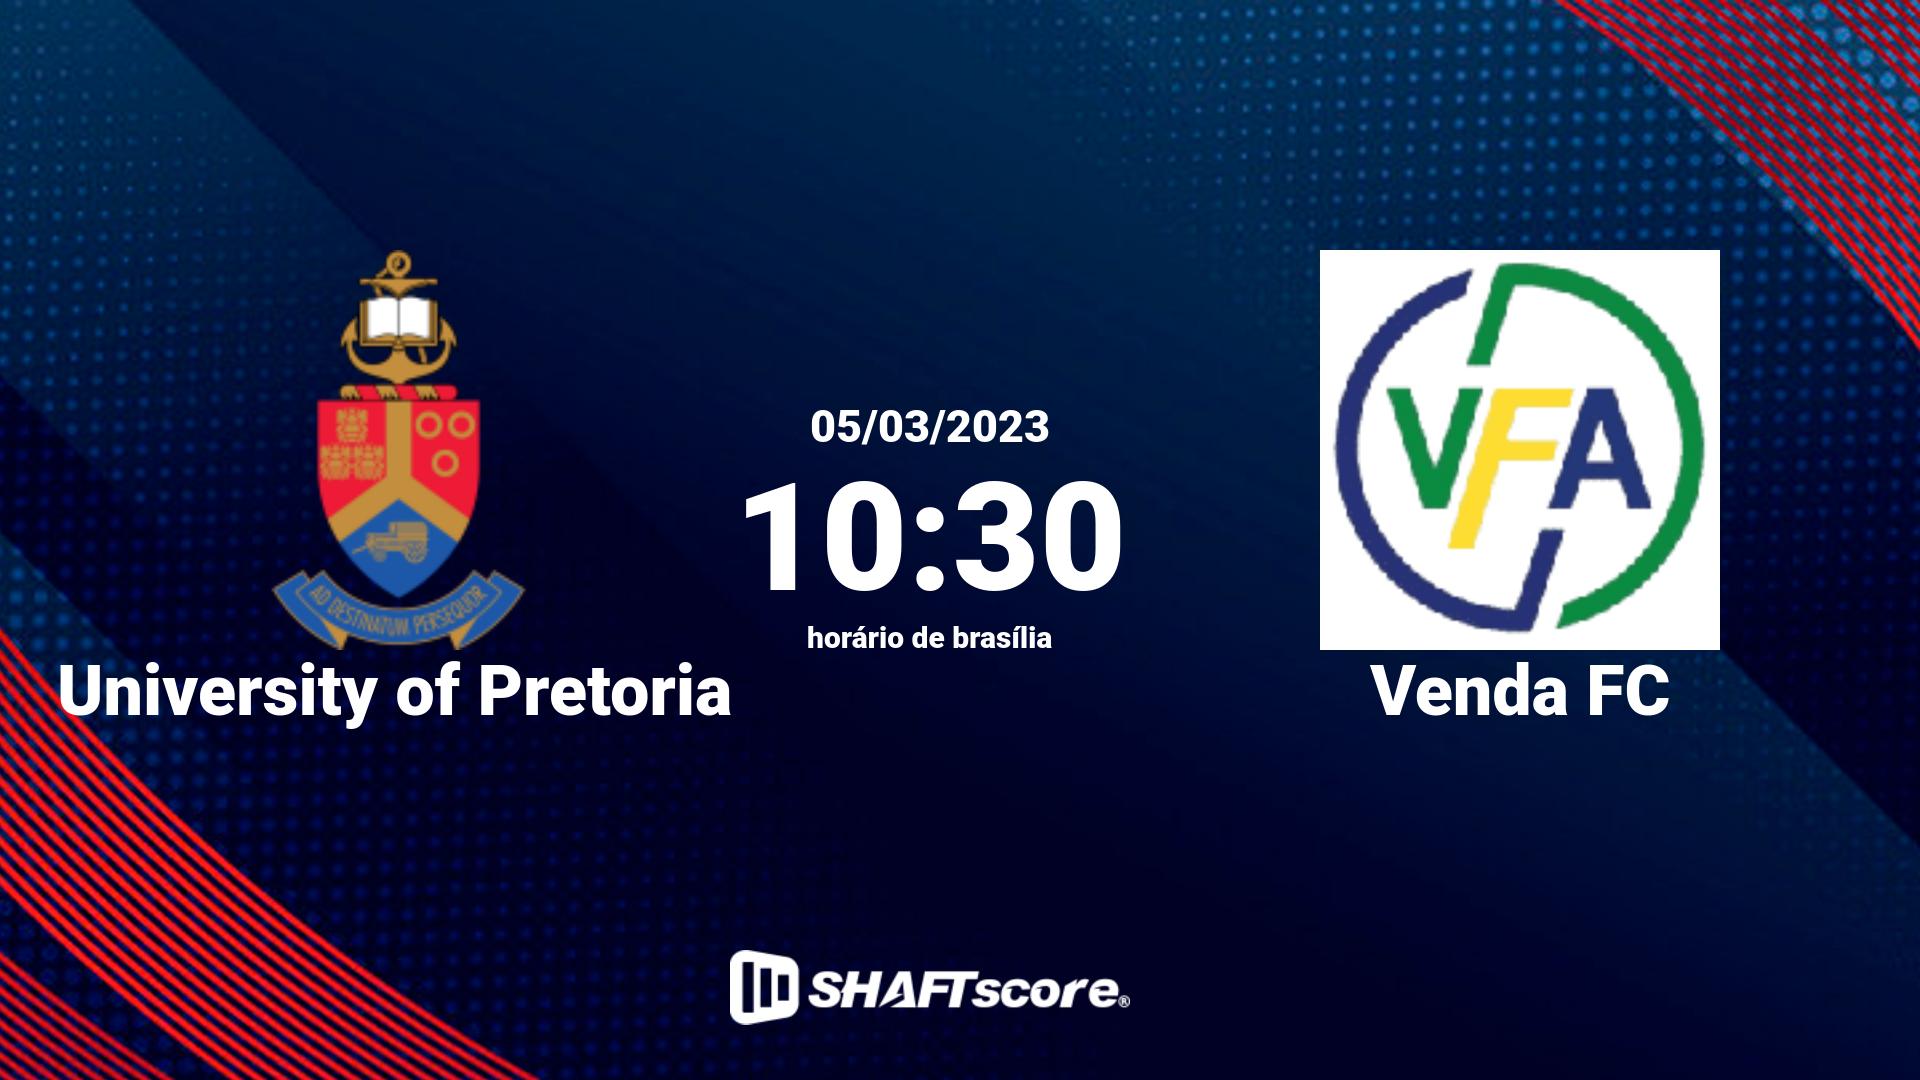 Estatísticas do jogo University of Pretoria vs Venda FC 05.03 10:30